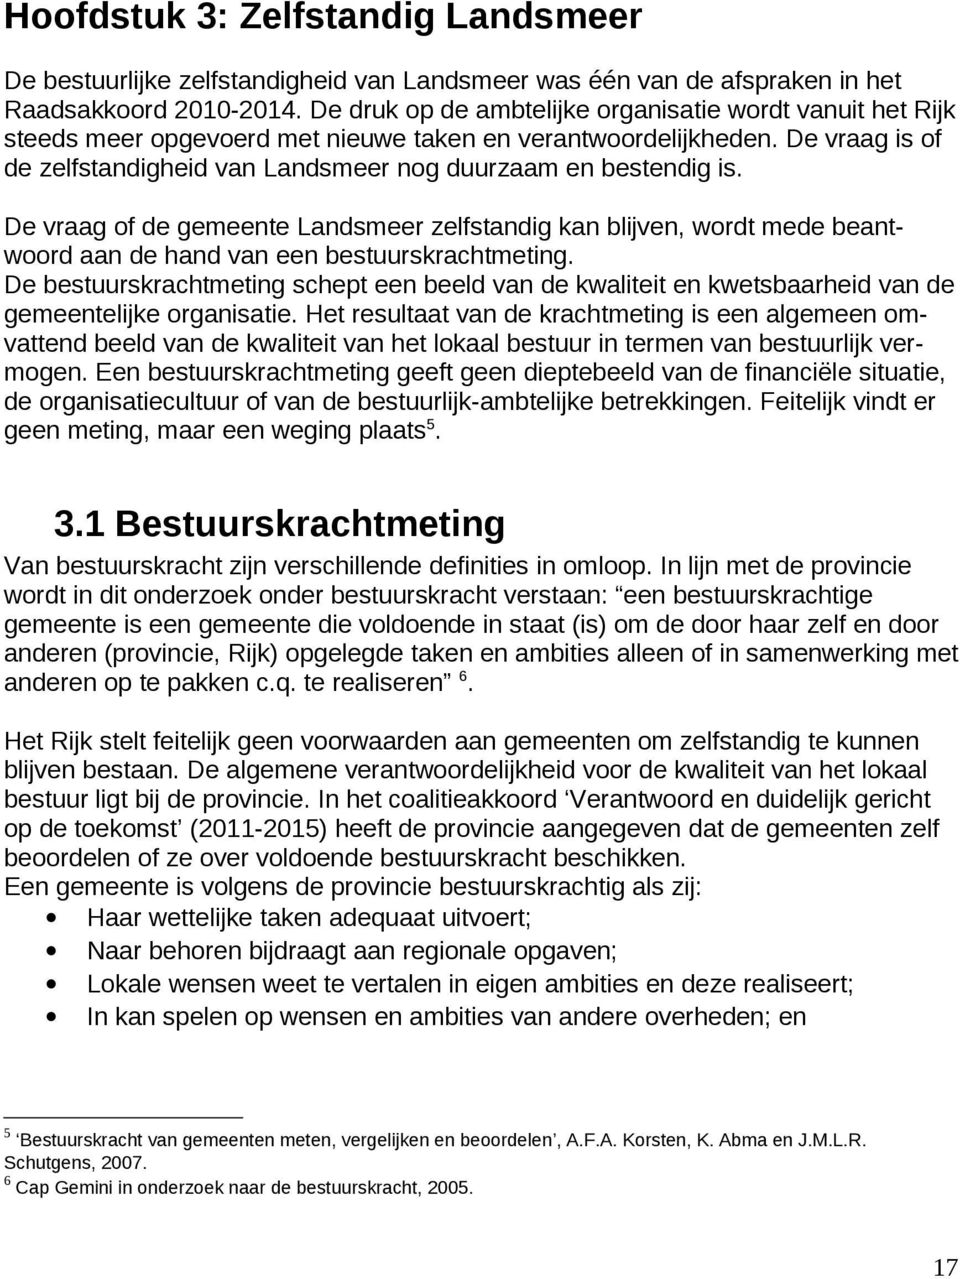 De vraag is of de zelfstandigheid van Landsmeer nog duurzaam en bestendig is. De vraag of de gemeente Landsmeer zelfstandig kan blijven, wordt mede beantwoord aan de hand van een bestuurskrachtmeting.